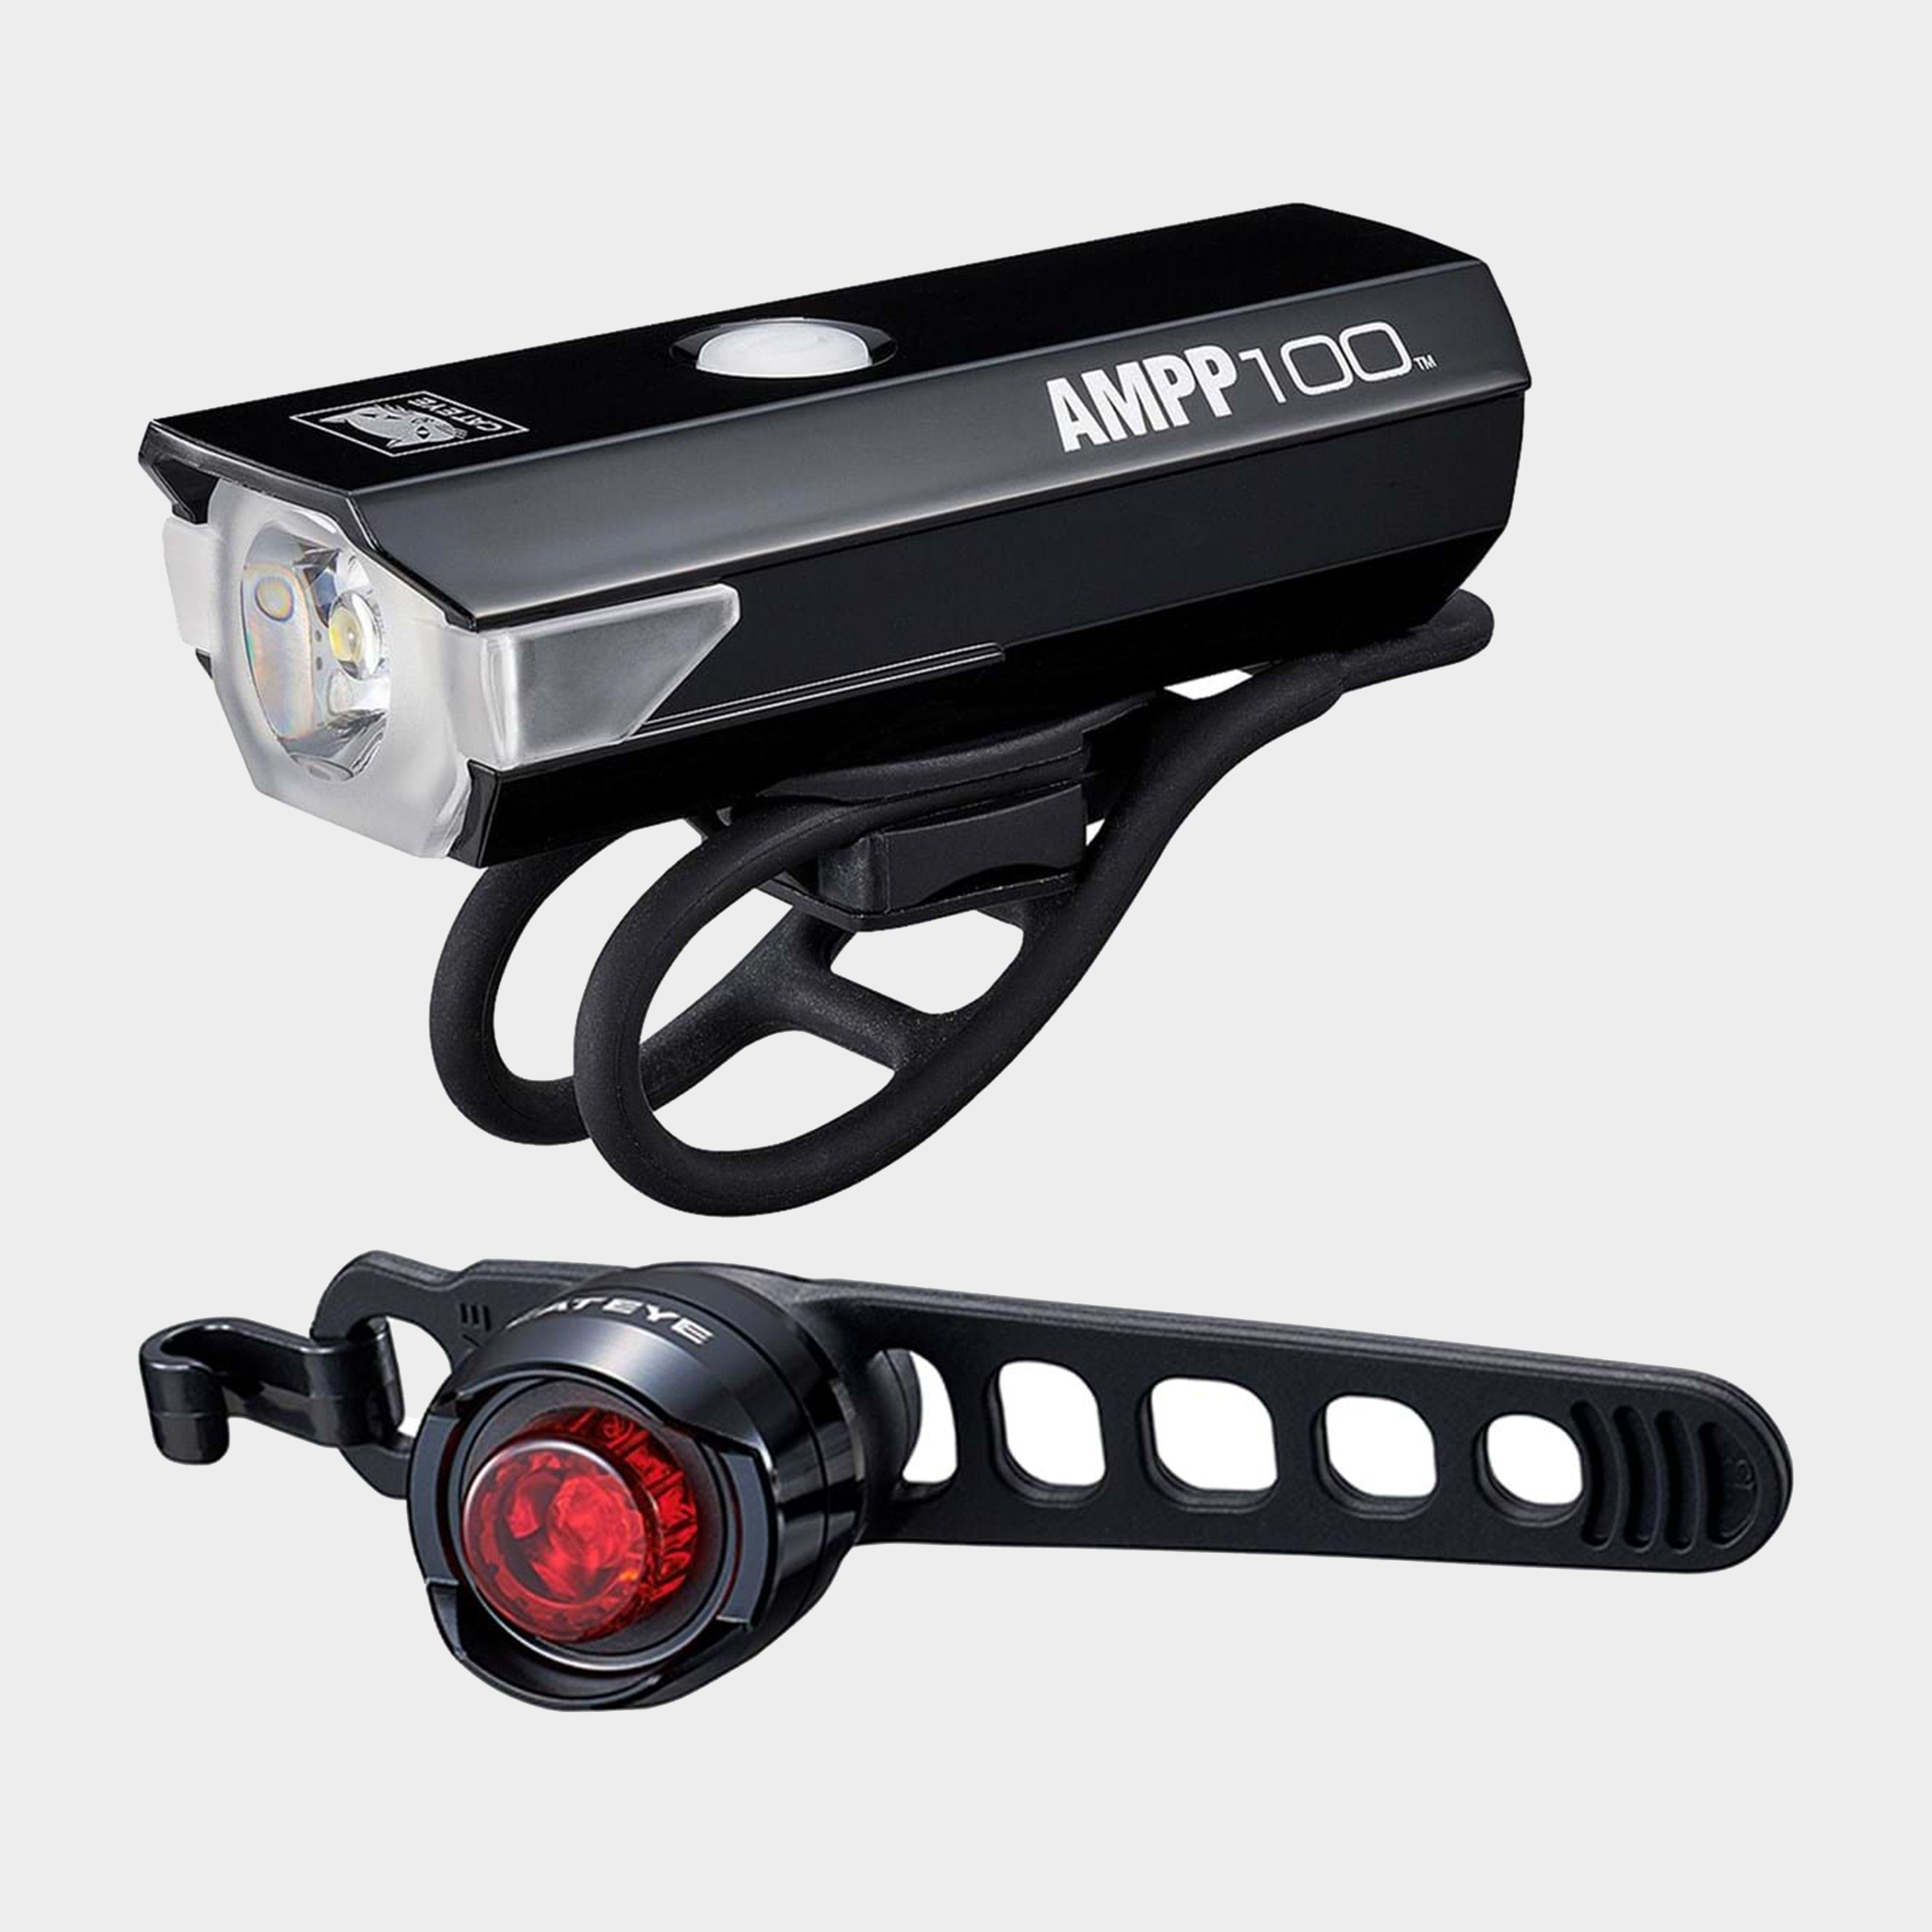 Cateye Cateye Ampp 200 & Orb Rc Bike Light Set - Black, Black